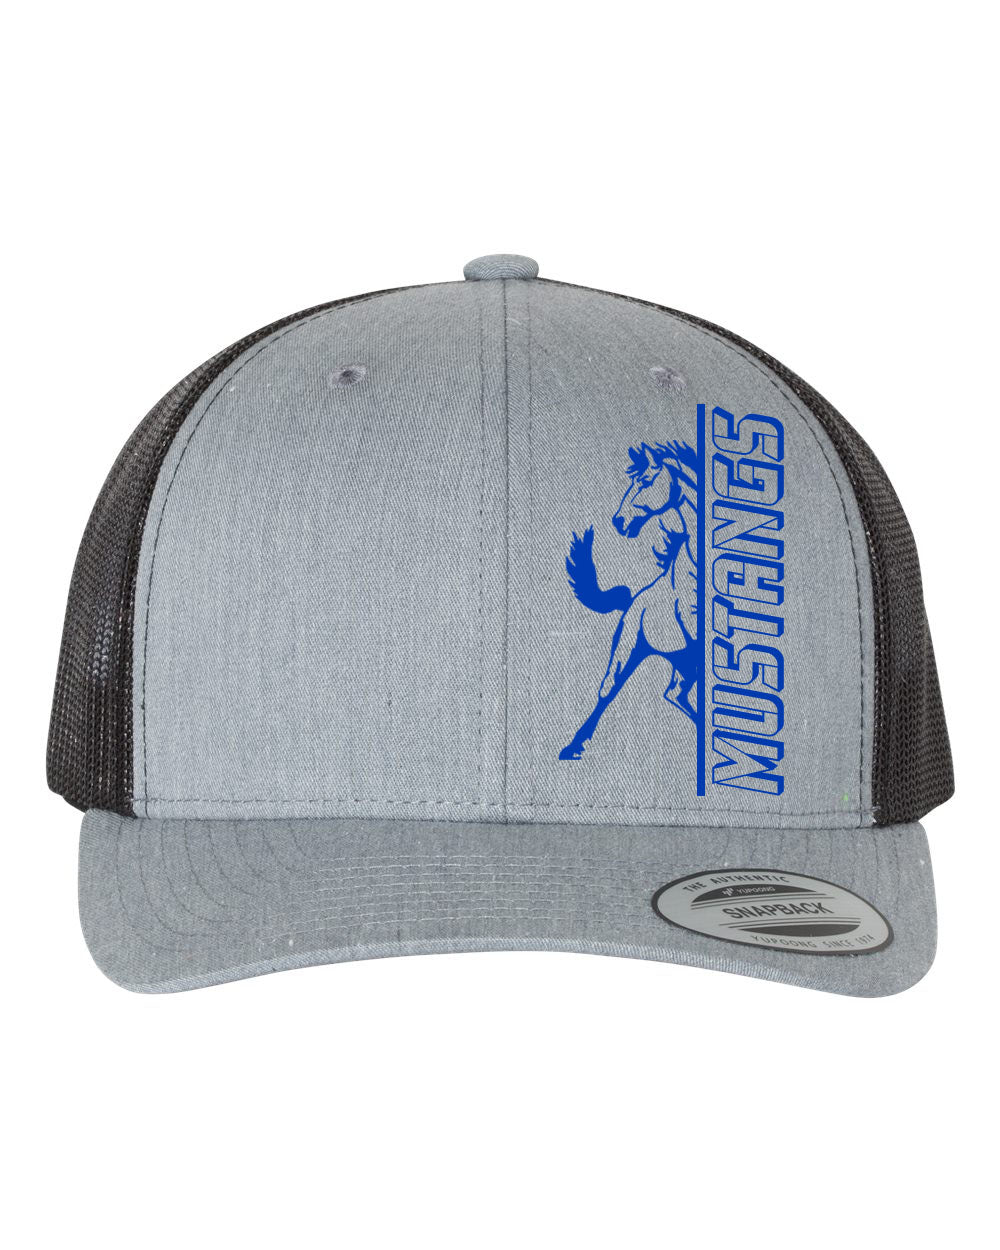 Frelinghuysen Design 14 Trucker Hat